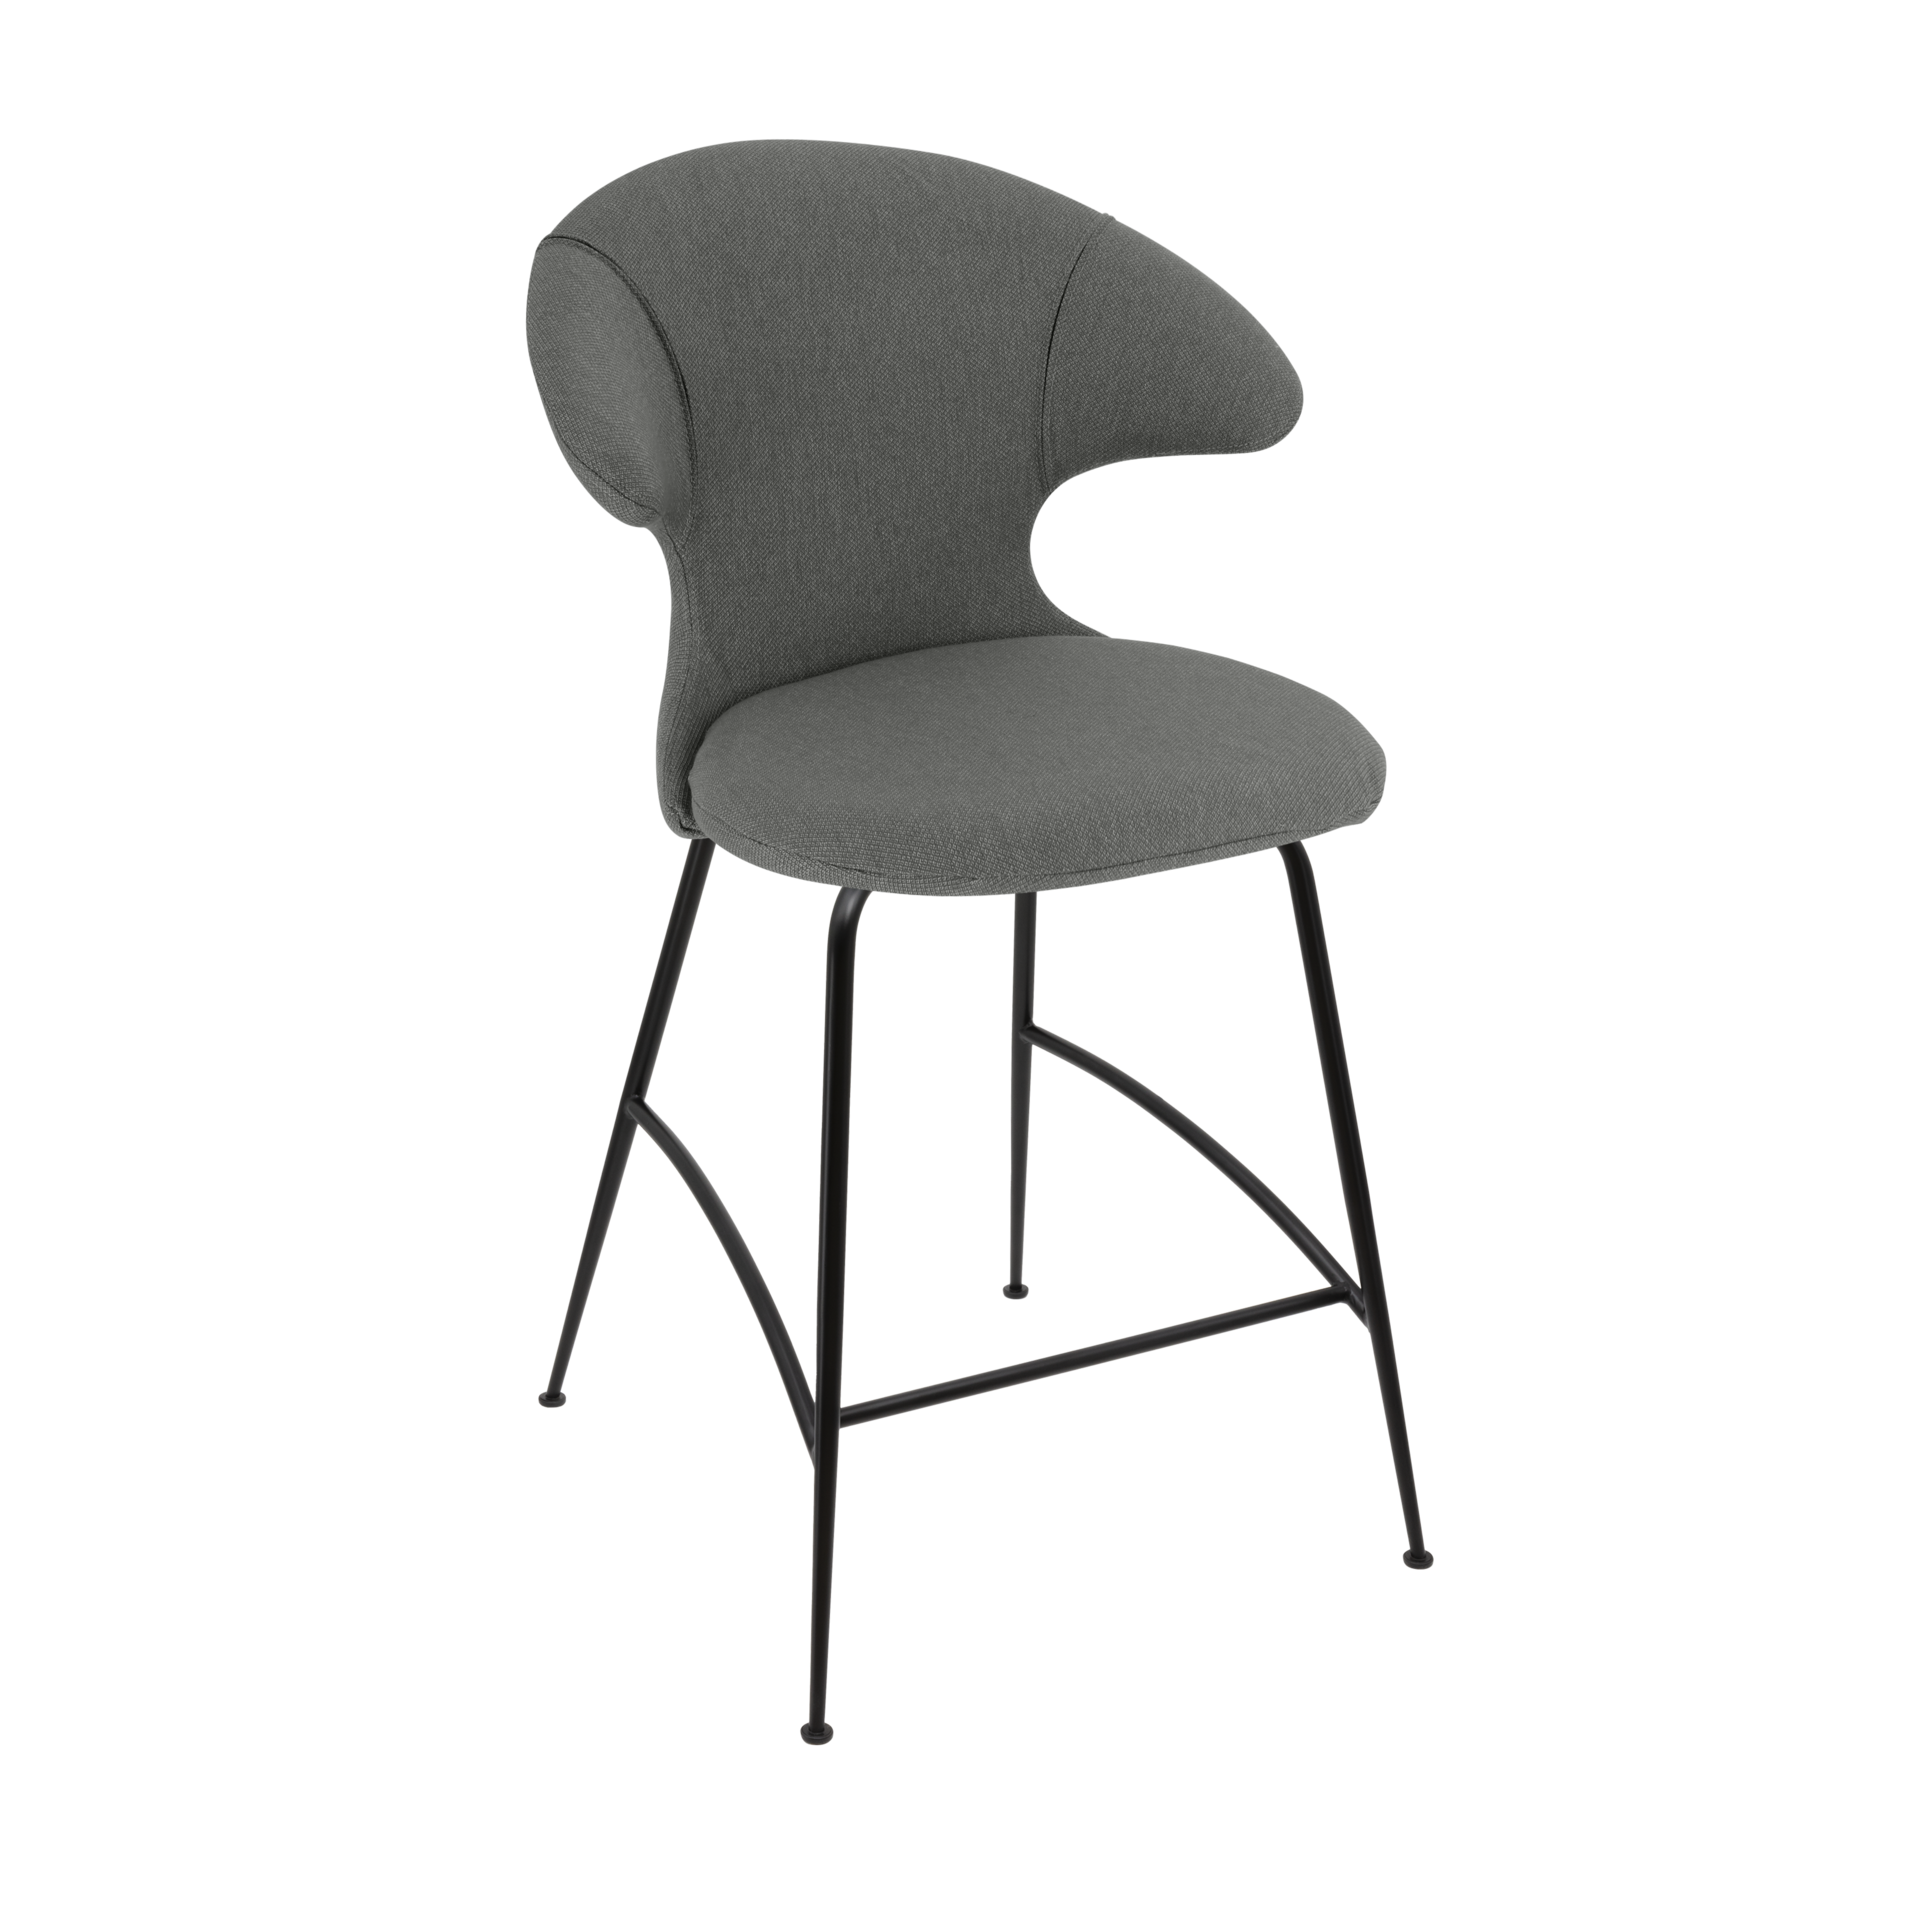 Time Flies Counter Stuhl in Morning Meadows präsentiert im Onlineshop von KAQTU Design AG. Barstuhl mit Armlehne ist von Umage